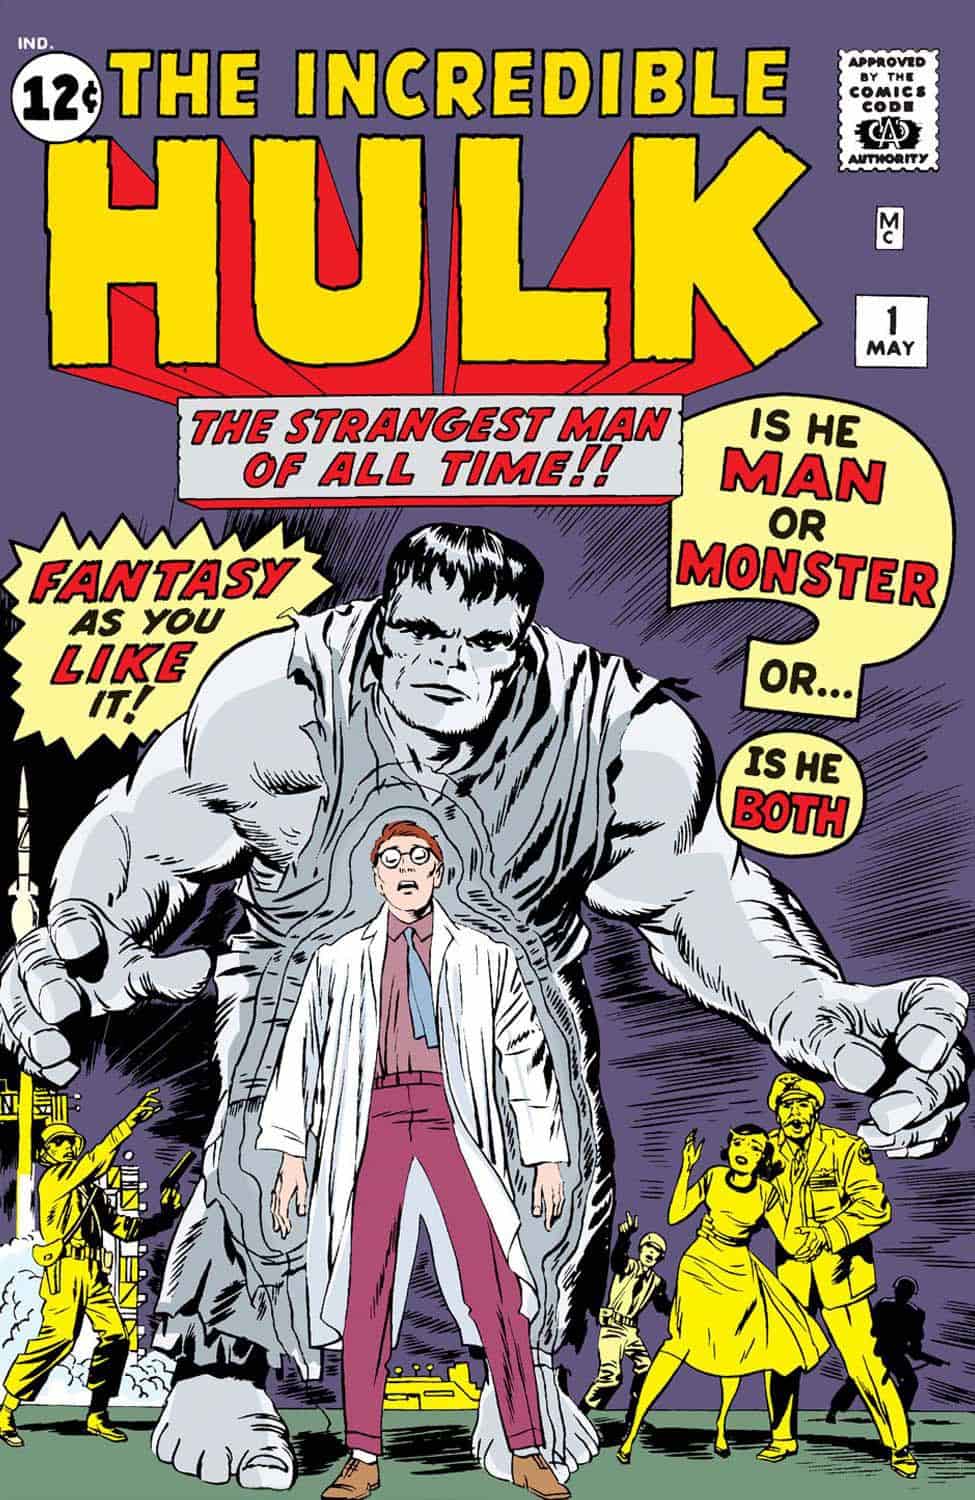 هالک در شش جلد اول رنگی خاکستری داشت